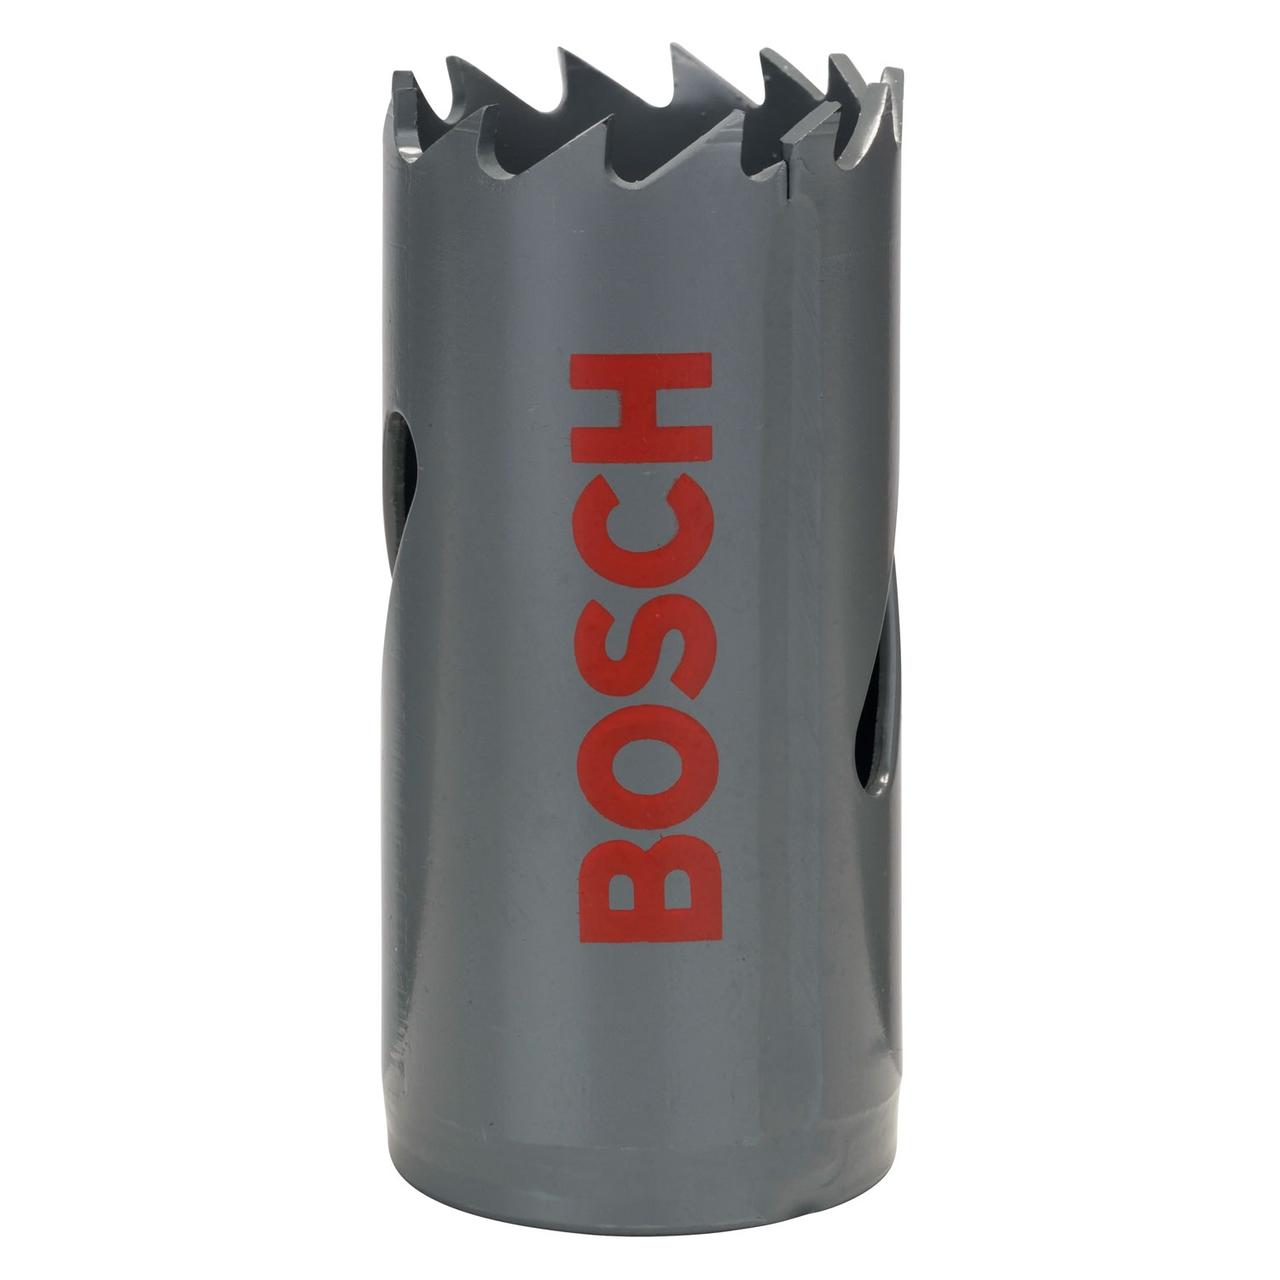 Коронка Bosch 40мм Bi-Metall 2608584112